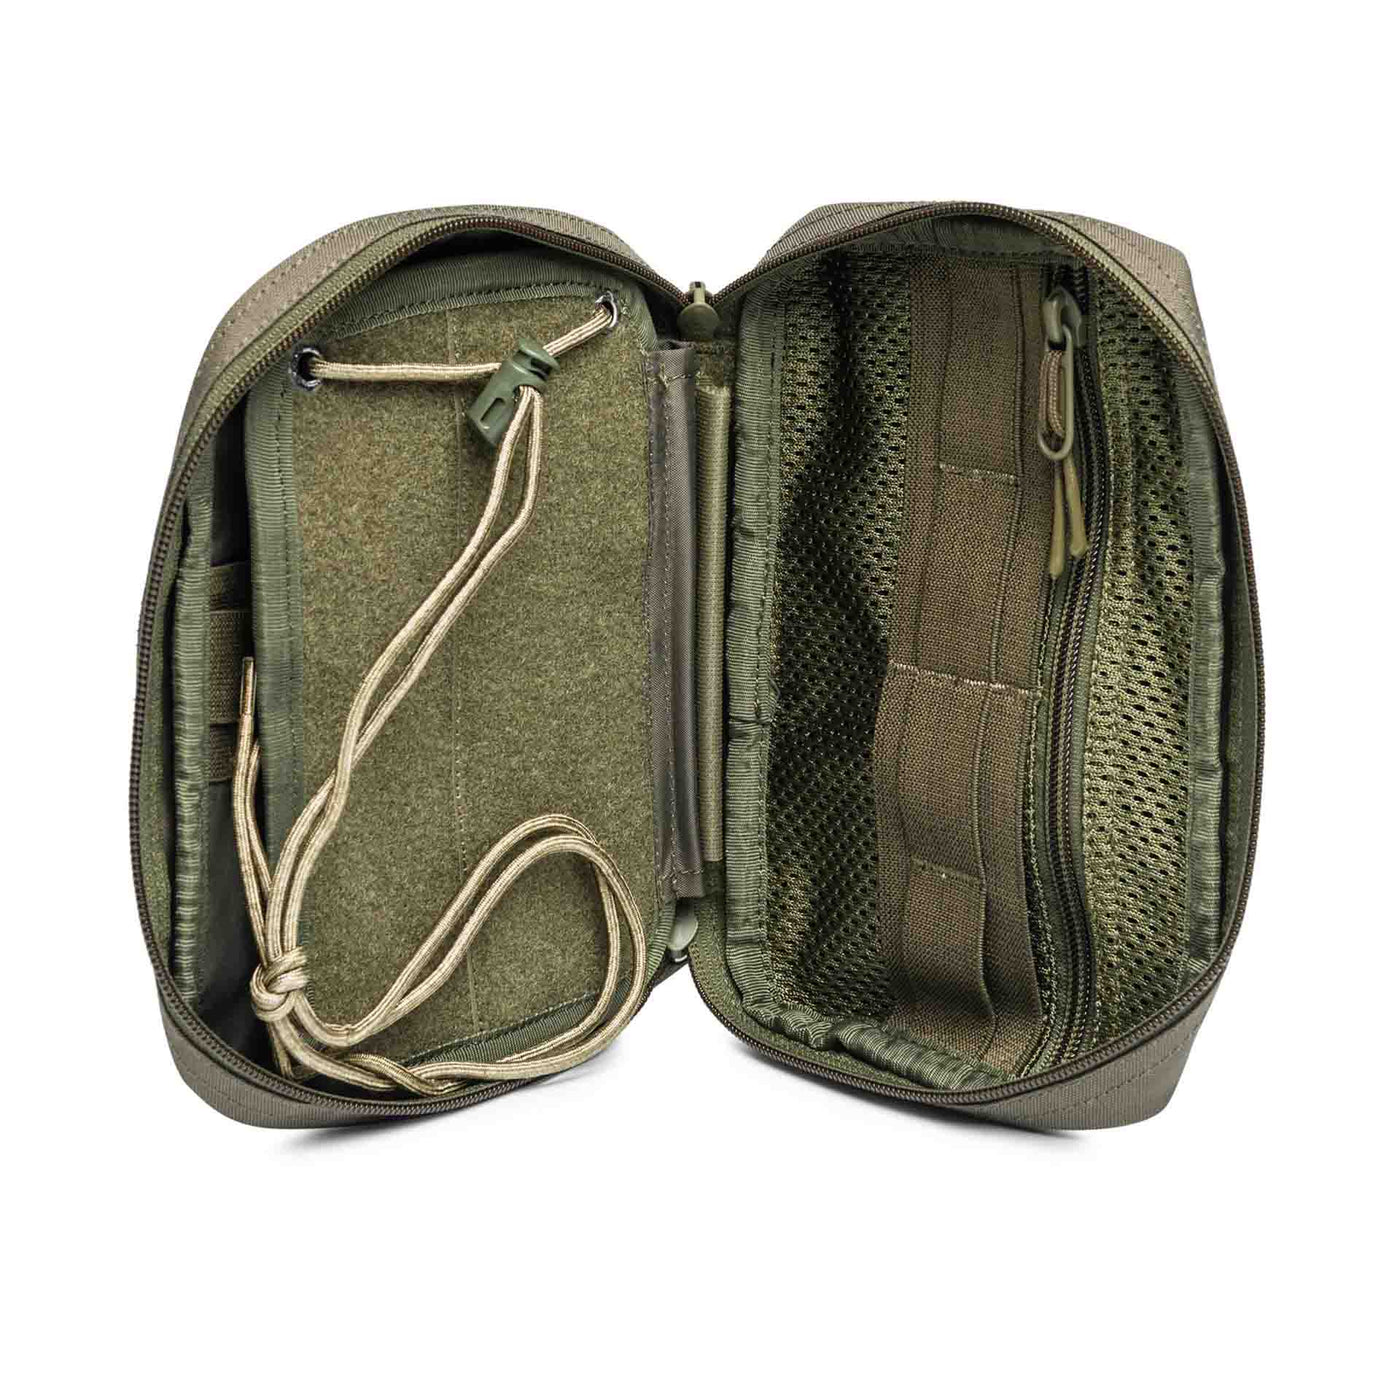 Beretta everyday carry pouch internal closeup